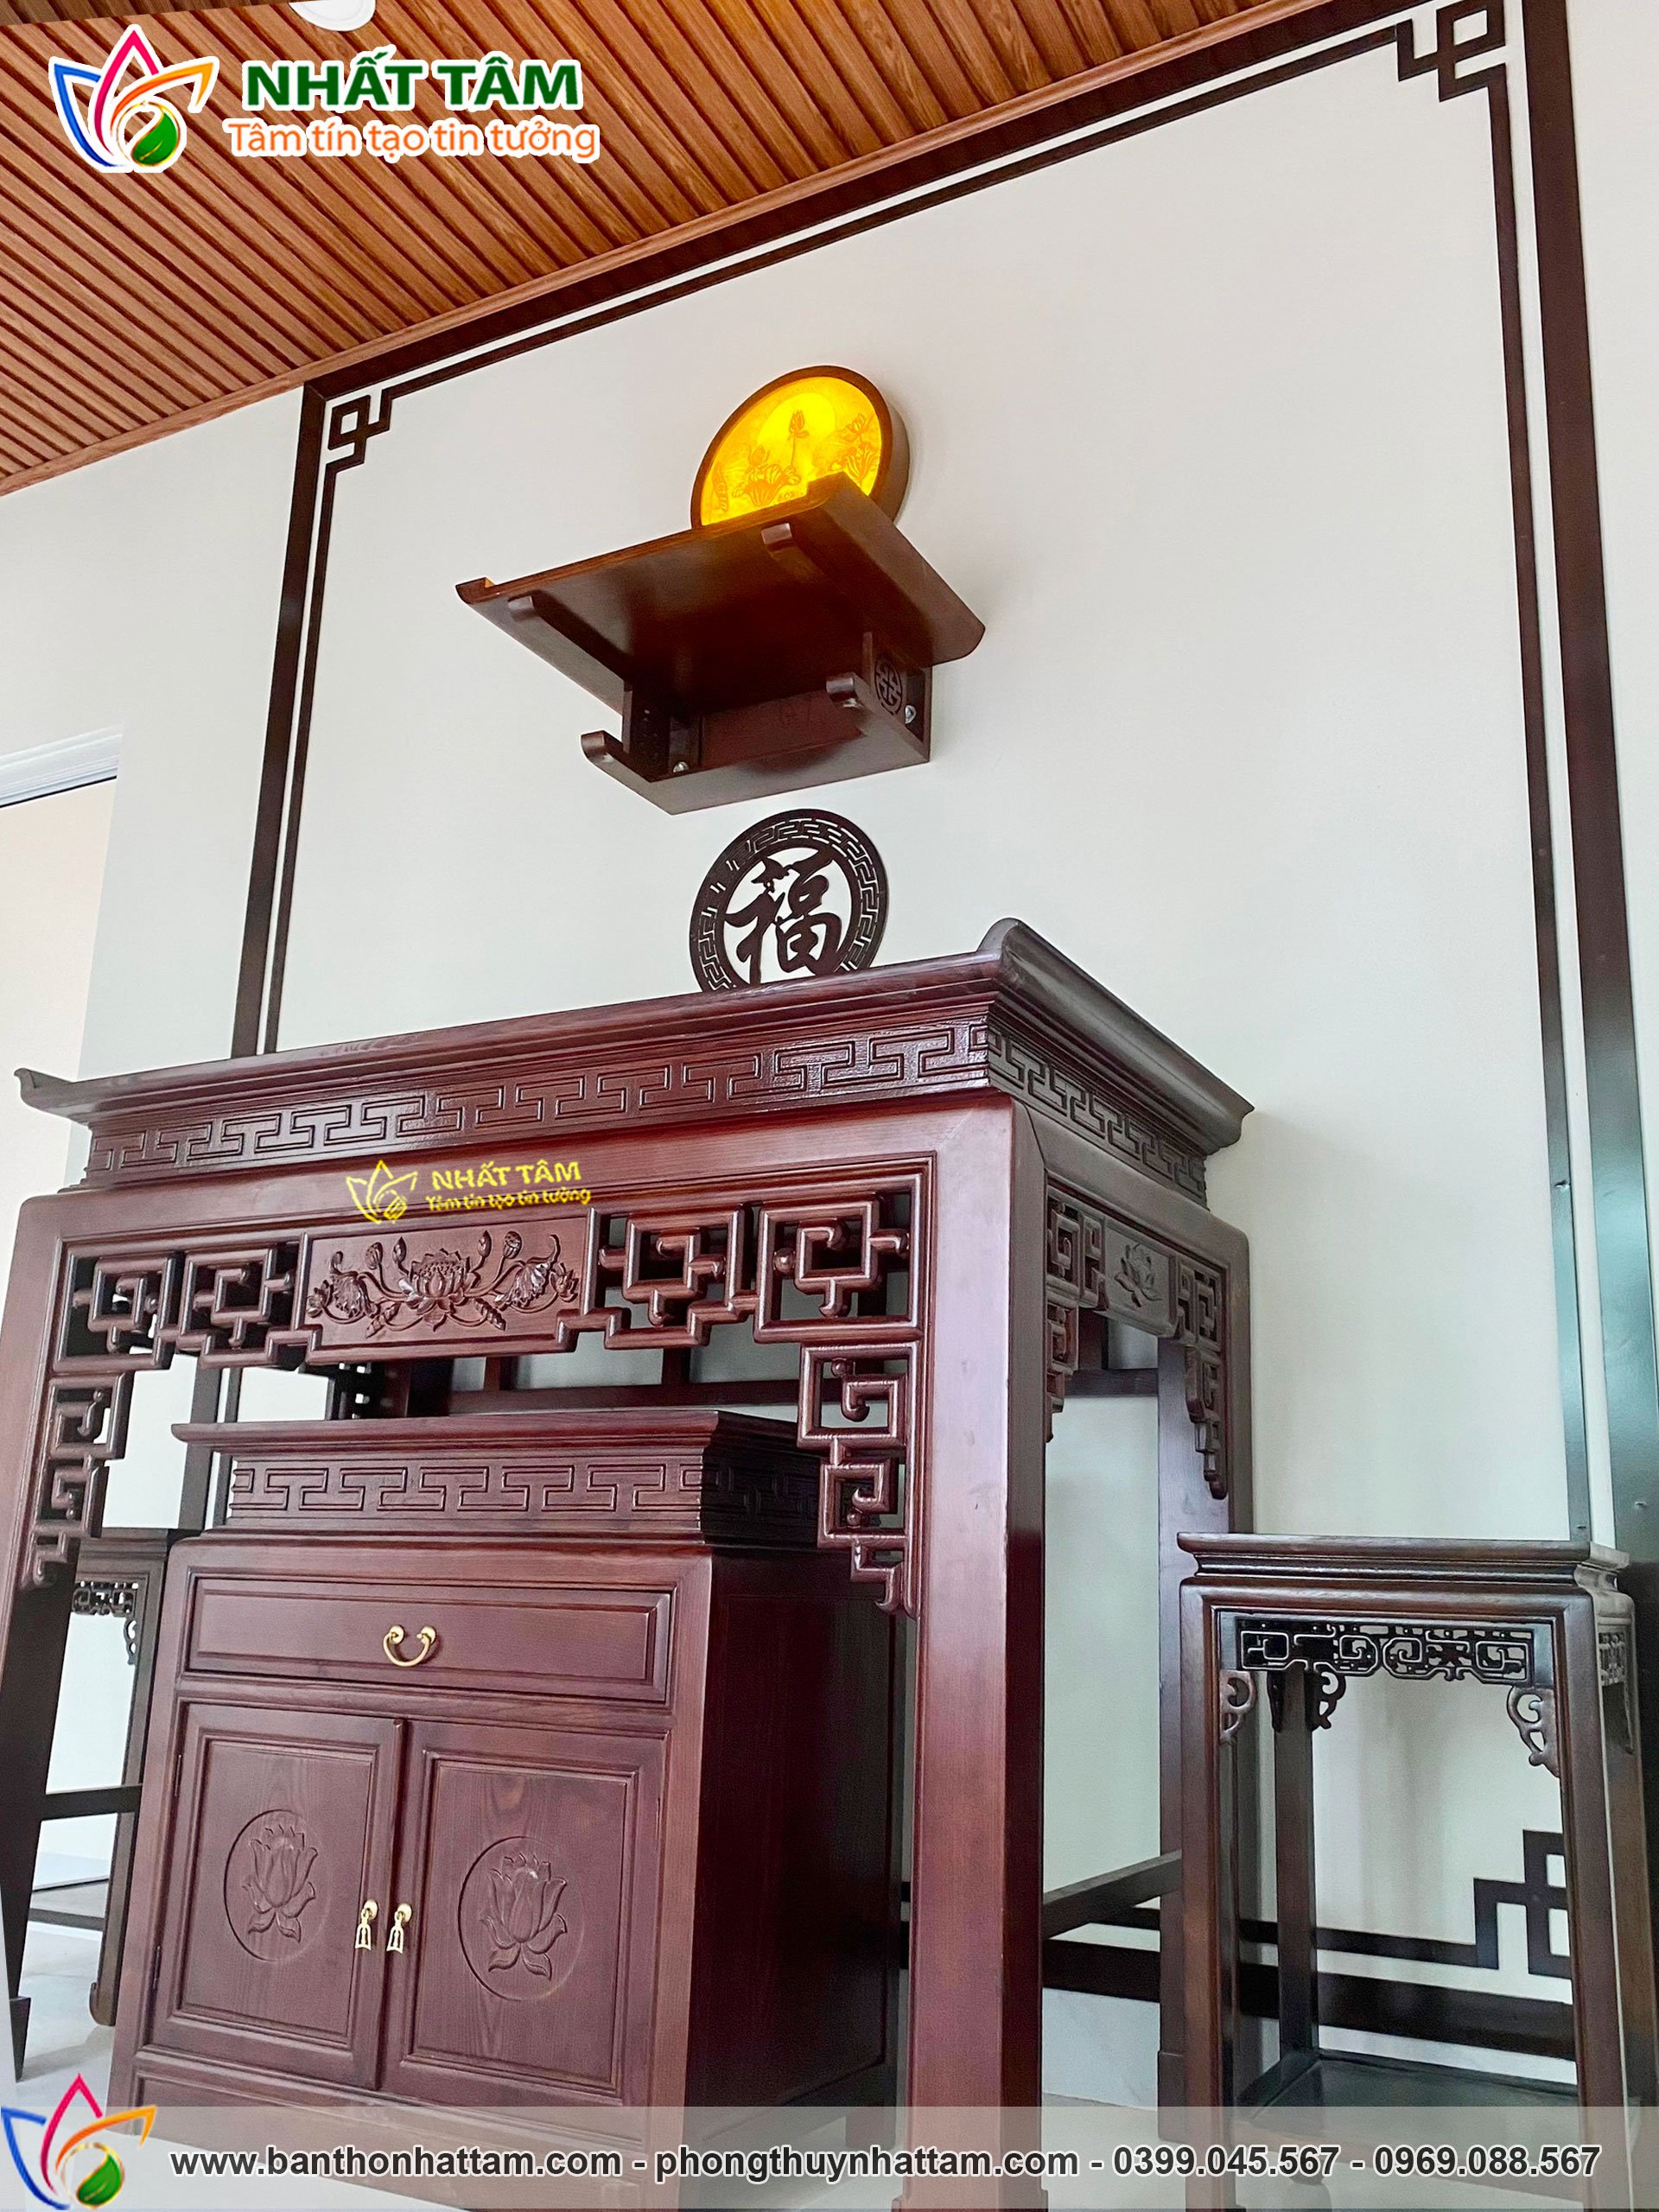 Hoàn thiện dự án lắp đặt bàn thờ đứng mẫu gia tiên tại Nam Từ Liêm - Hà Nội